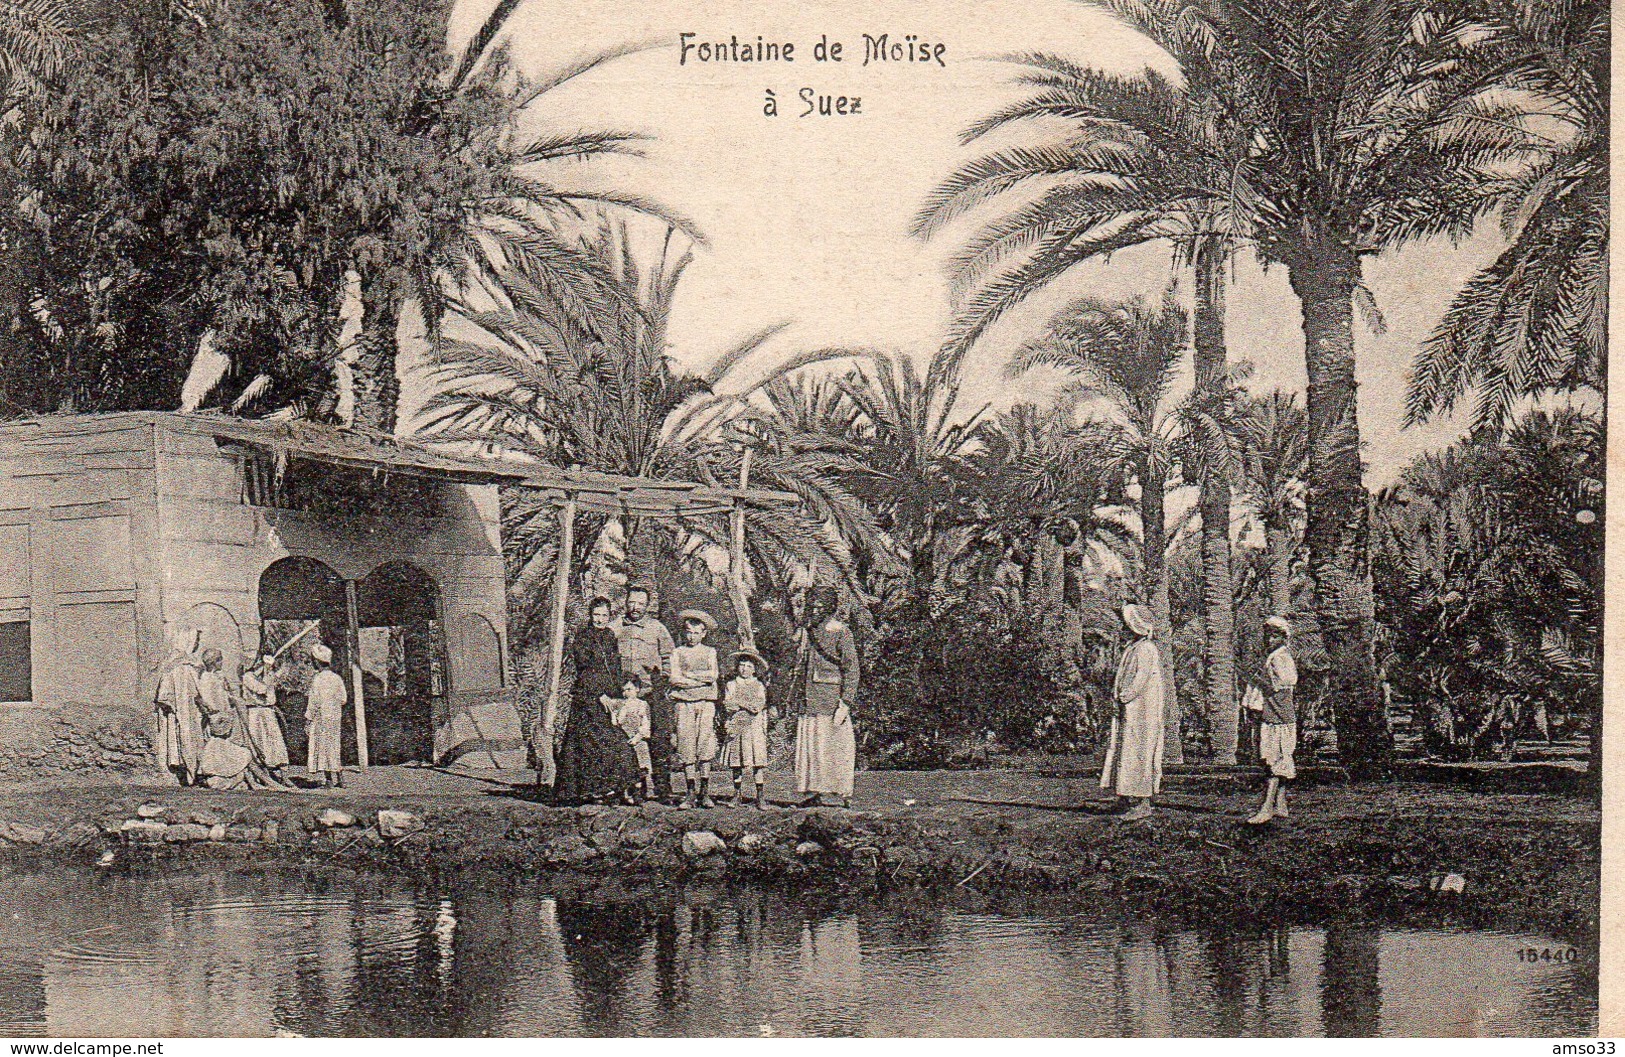 9666. CPA FONTAINE DE MOÏSE A SUEZ - Suez